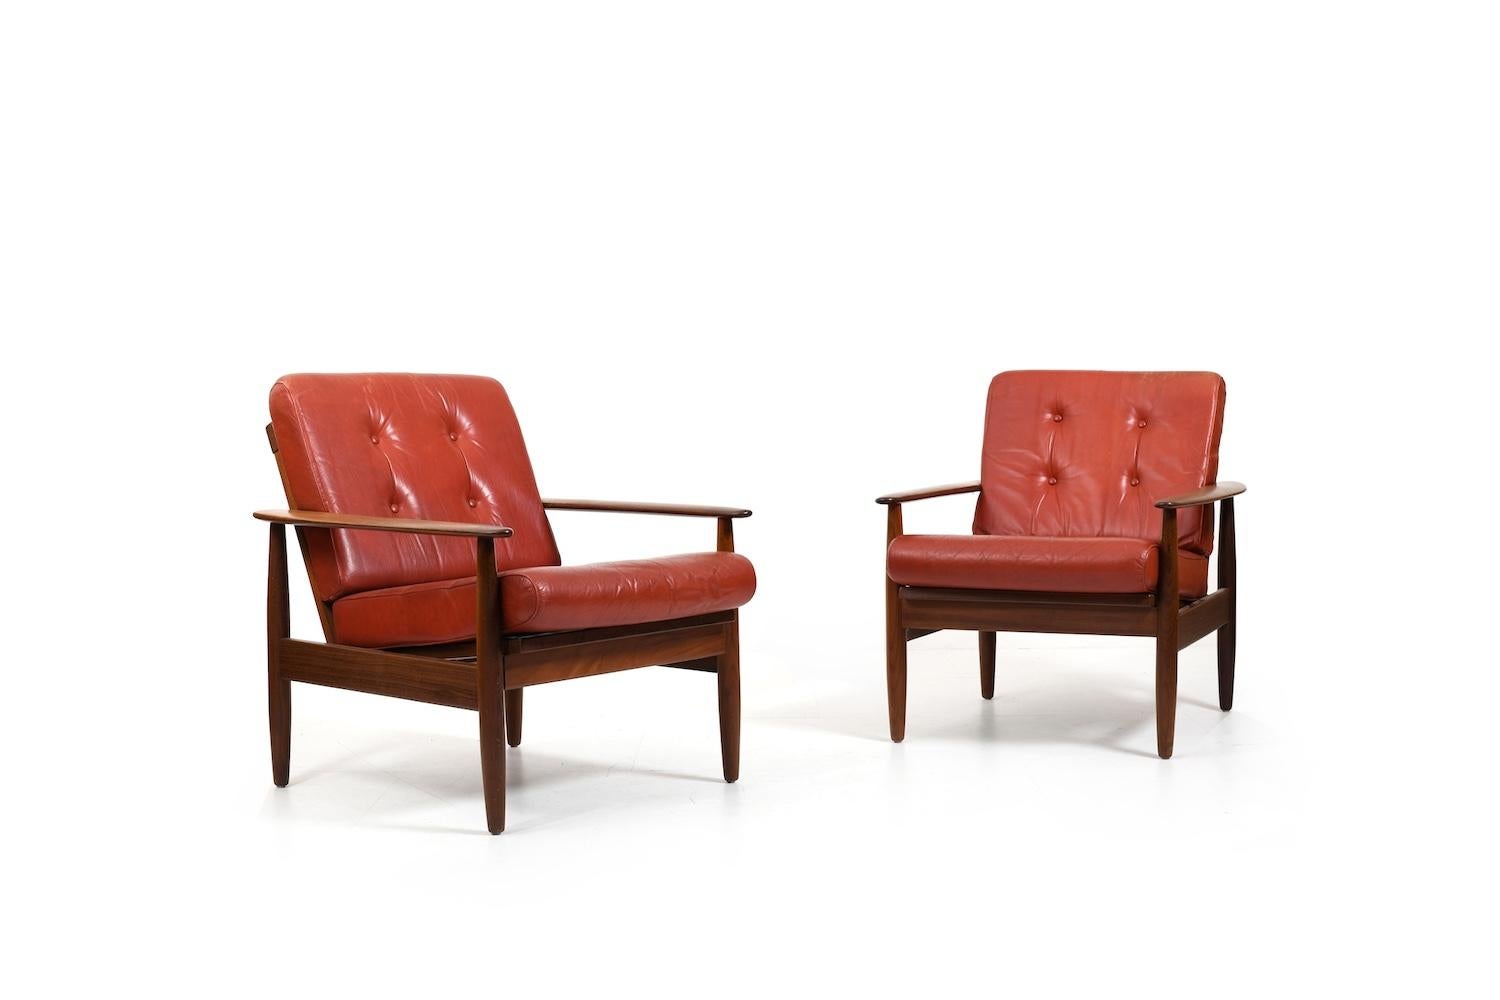 Zwei skandinavische Sessel aus Teakholz und originalen Kissen mit rotem indischem Leder. Sehr guter Vintage-Zustand, sofort einsatzbereit. 1960er Jahre Preis für das Set.